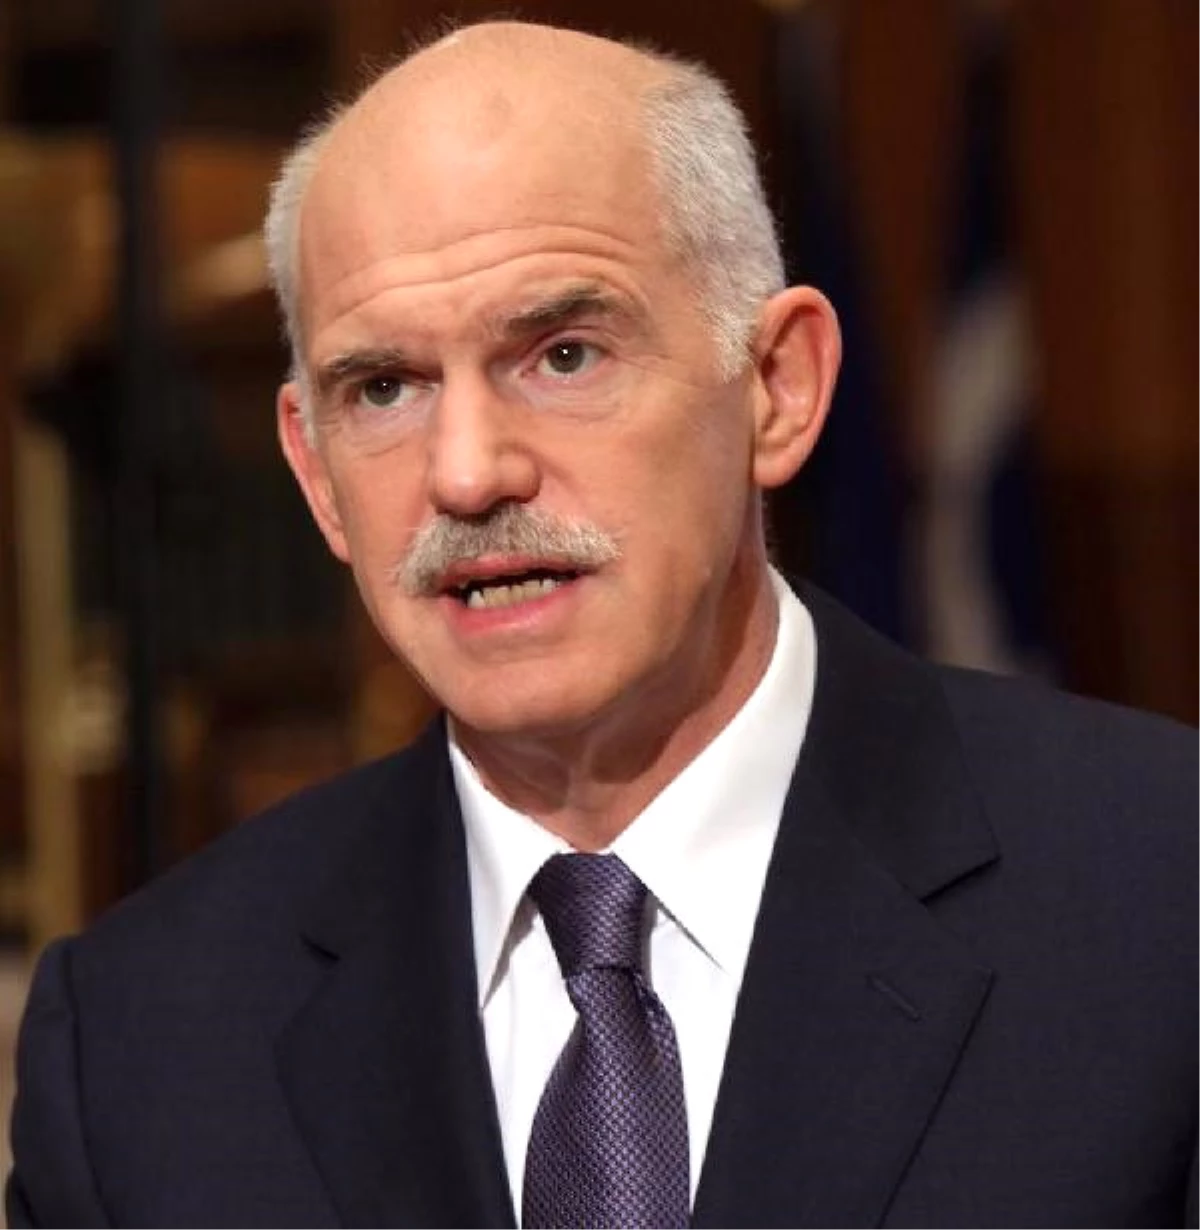 Yunanistan\'ın Eski Başbakanı Papandreu, Ekonomi Hamleleri Nedeniyle Yargılanacak